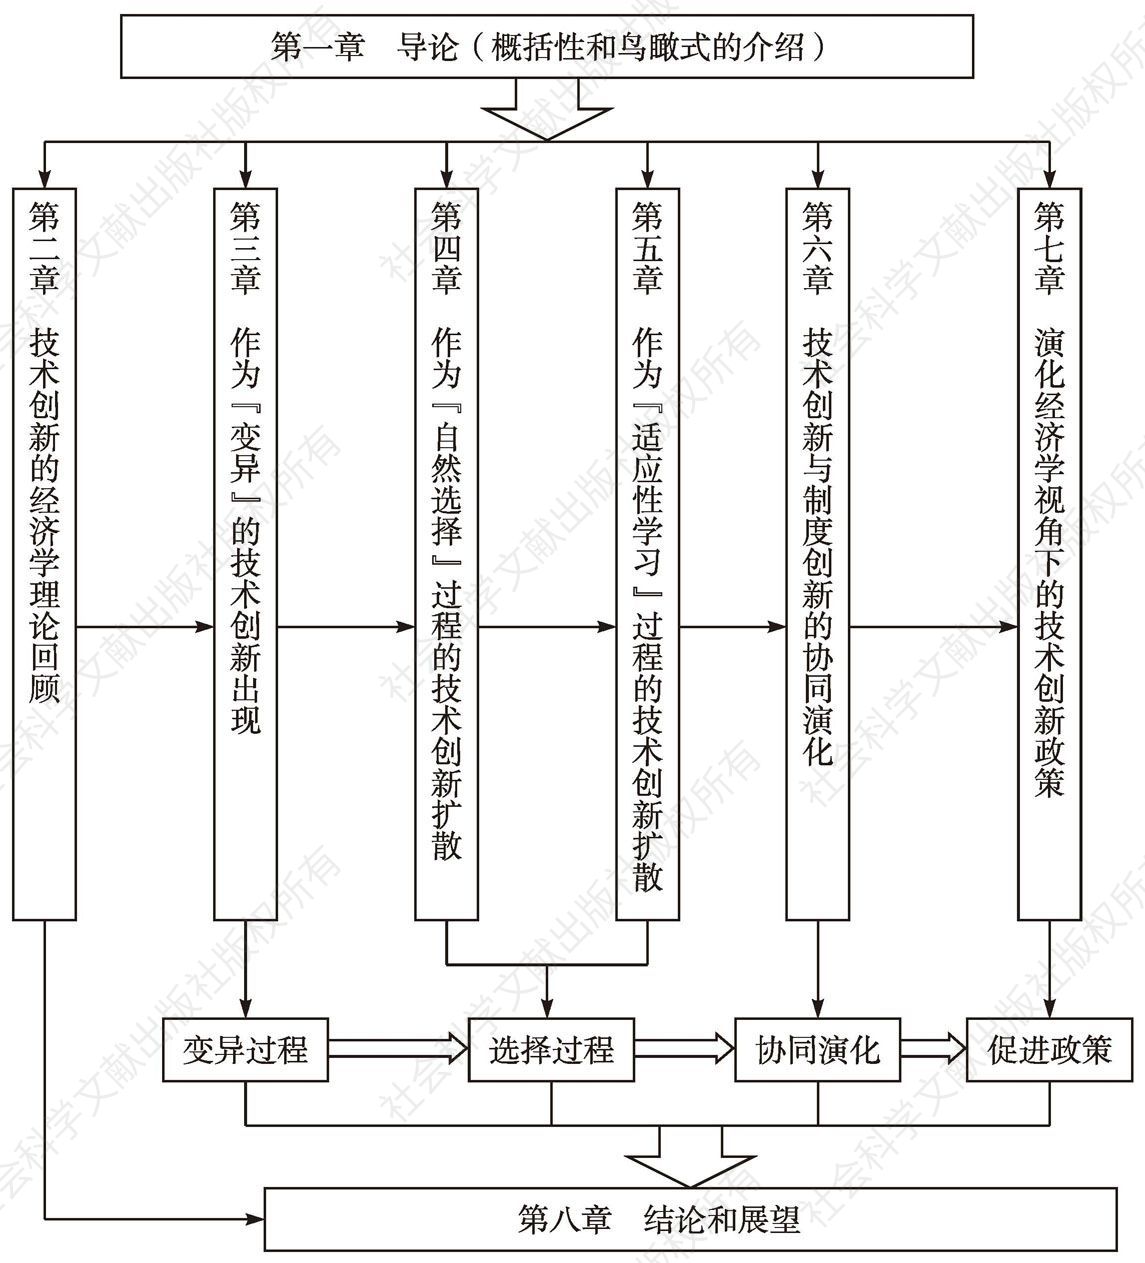 图1-1 基本研究结构